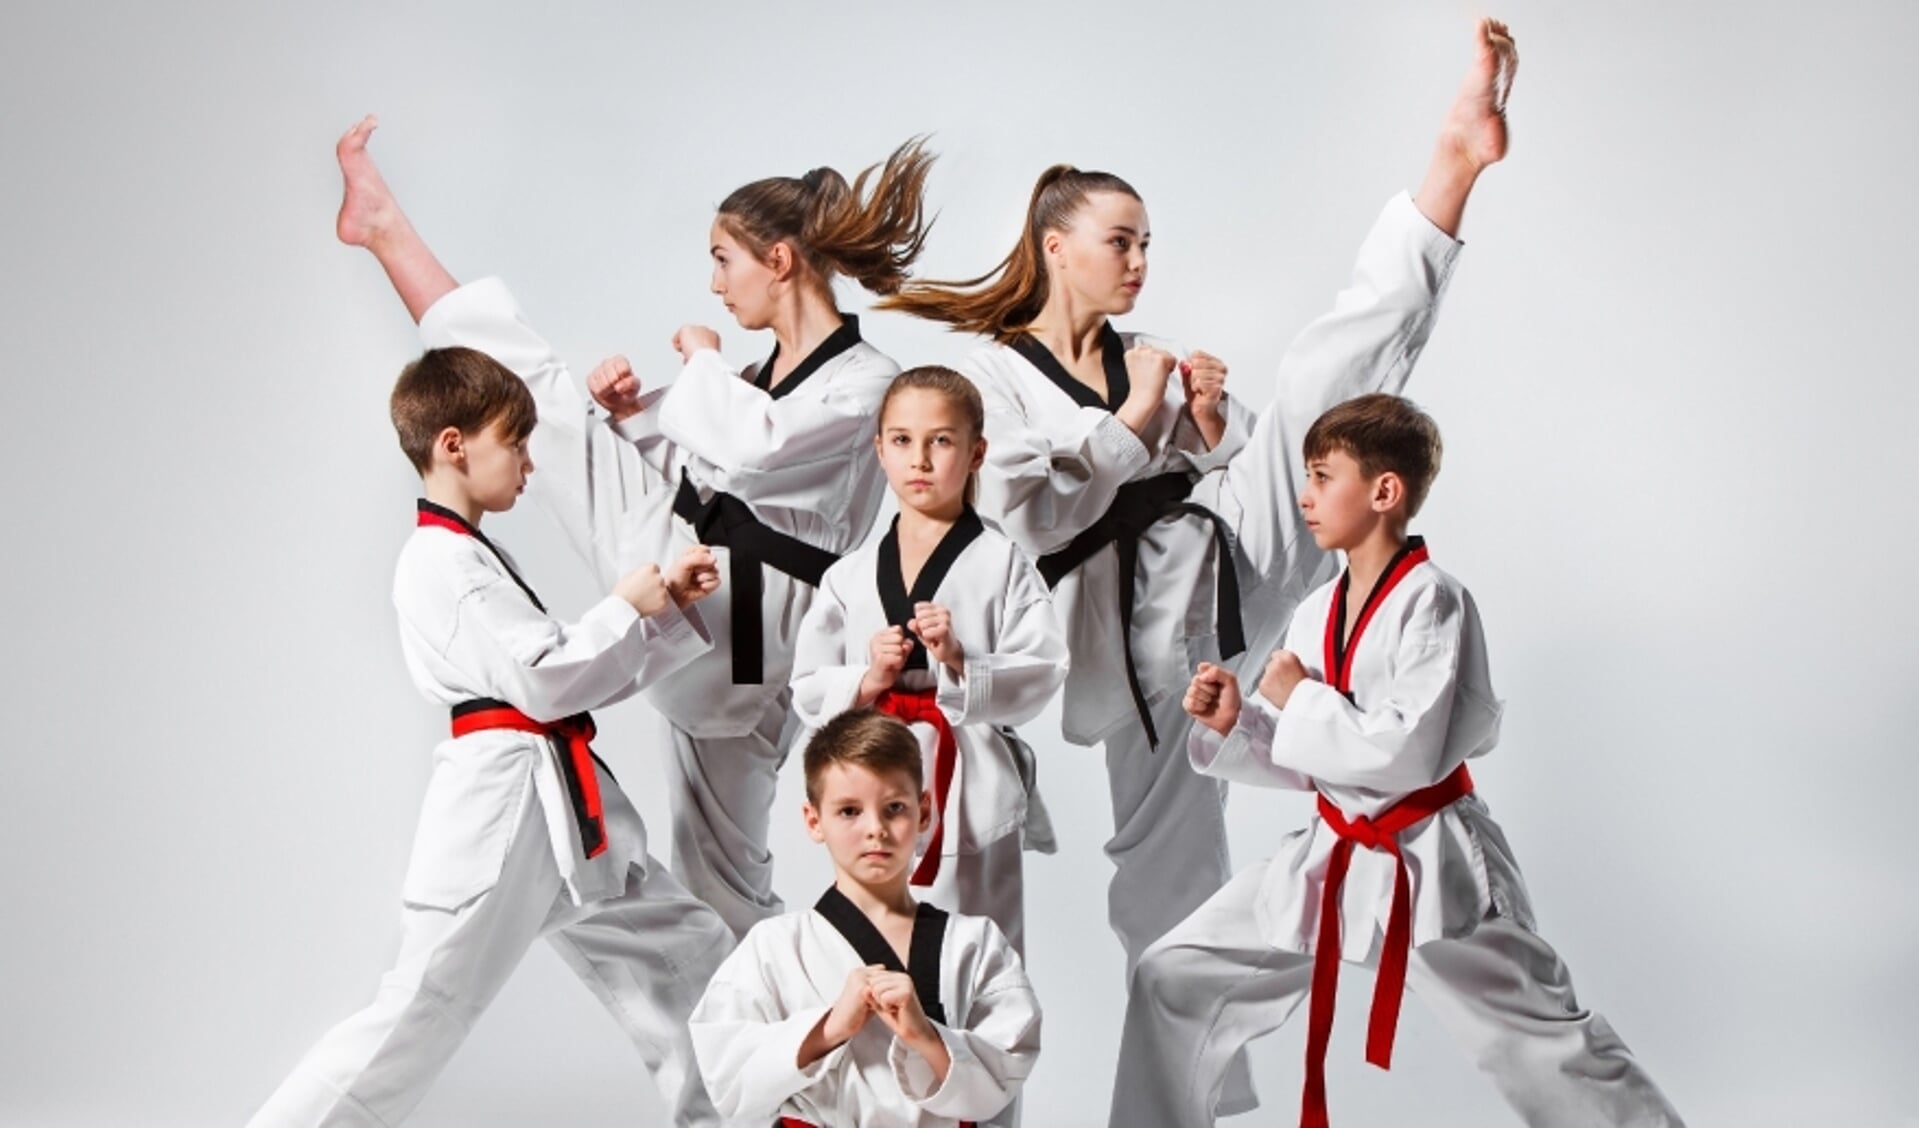 Budo Aykac houdt een open dag om kinderen kennis te laten met bijvoorbeeld taekwondo. 